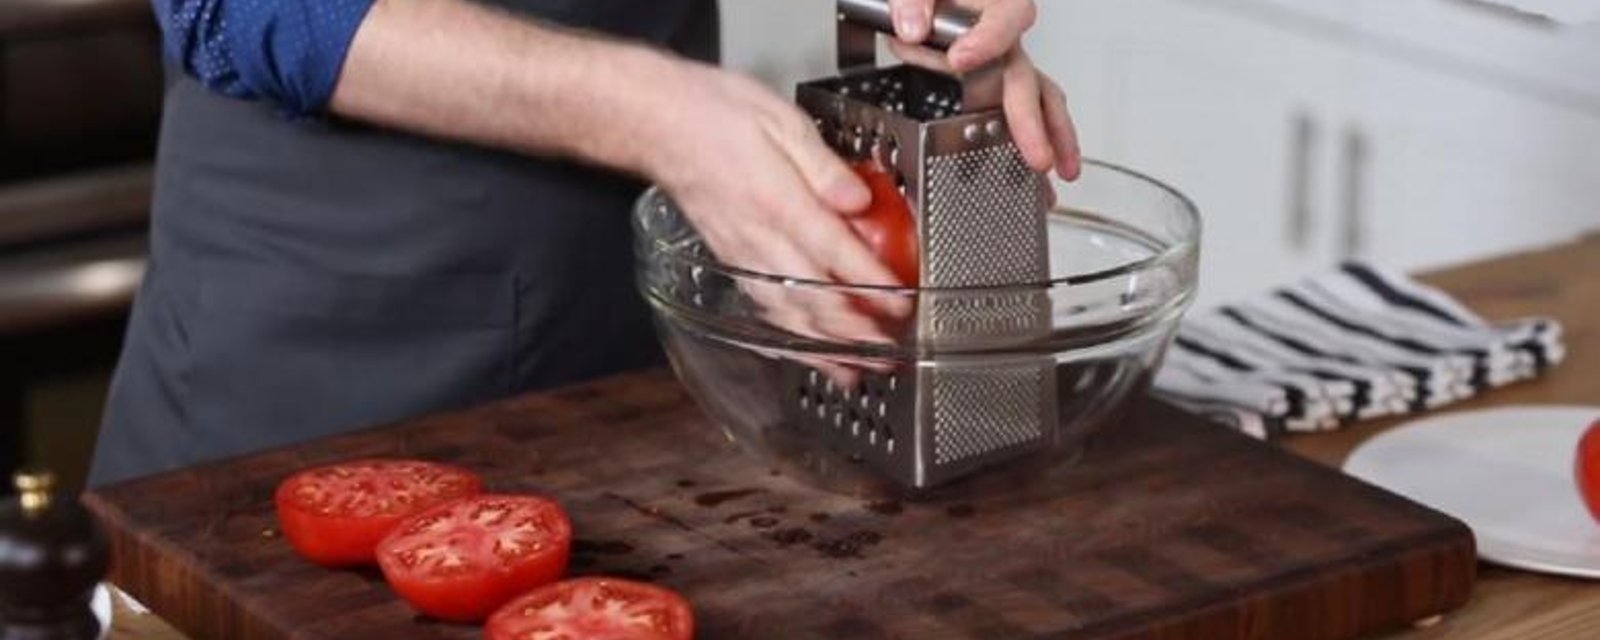 Il râpe des tomates fraîches sur une râpe à fromage! Maintenant, gardez l'oeil sur le bol! 